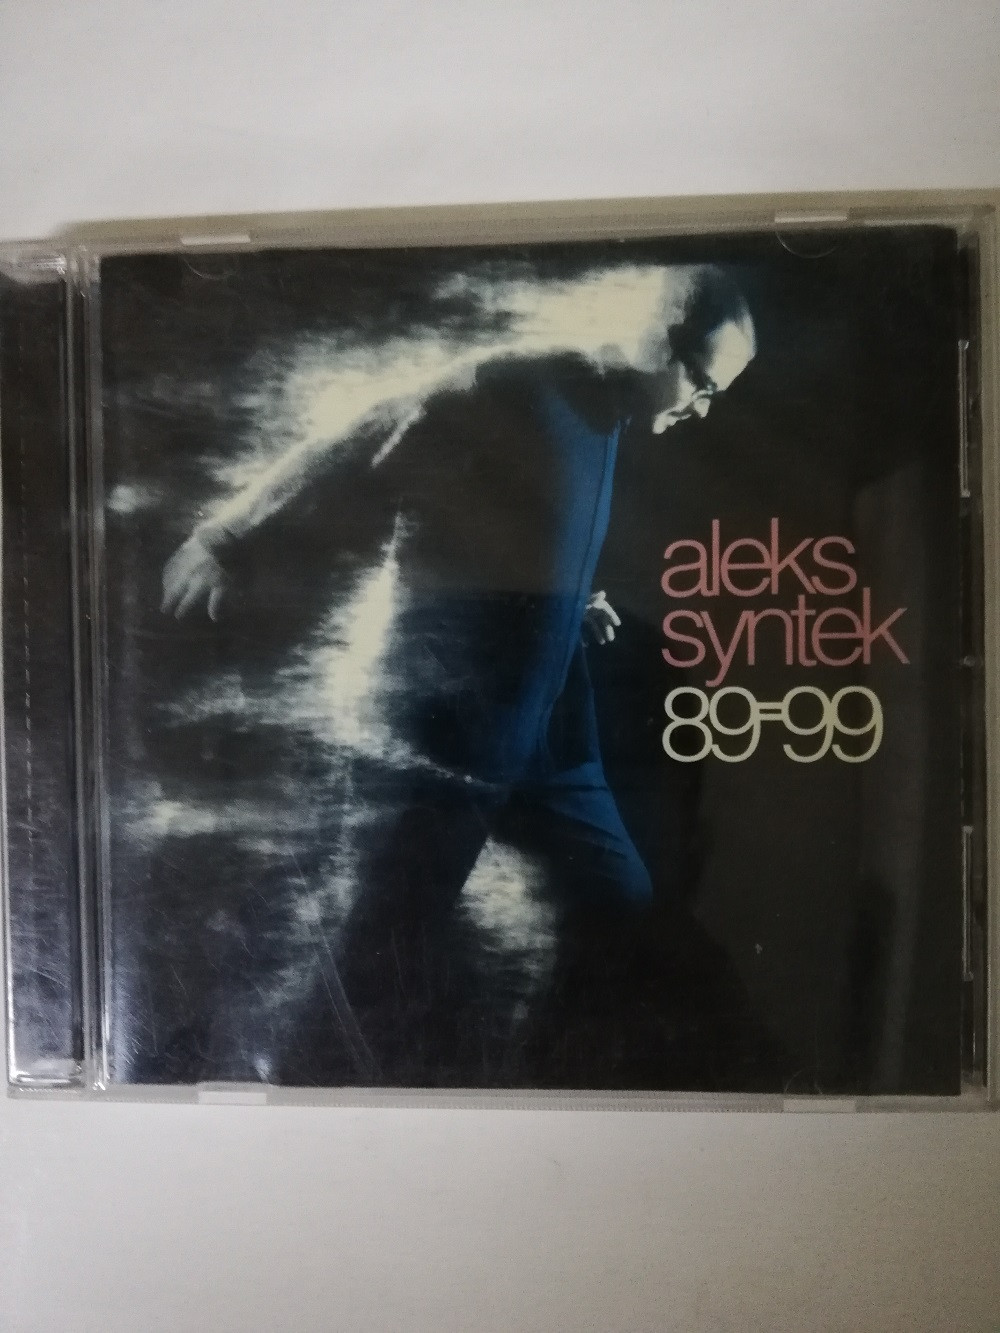 Imagen CD ALEK SYNTEK - 89-99 